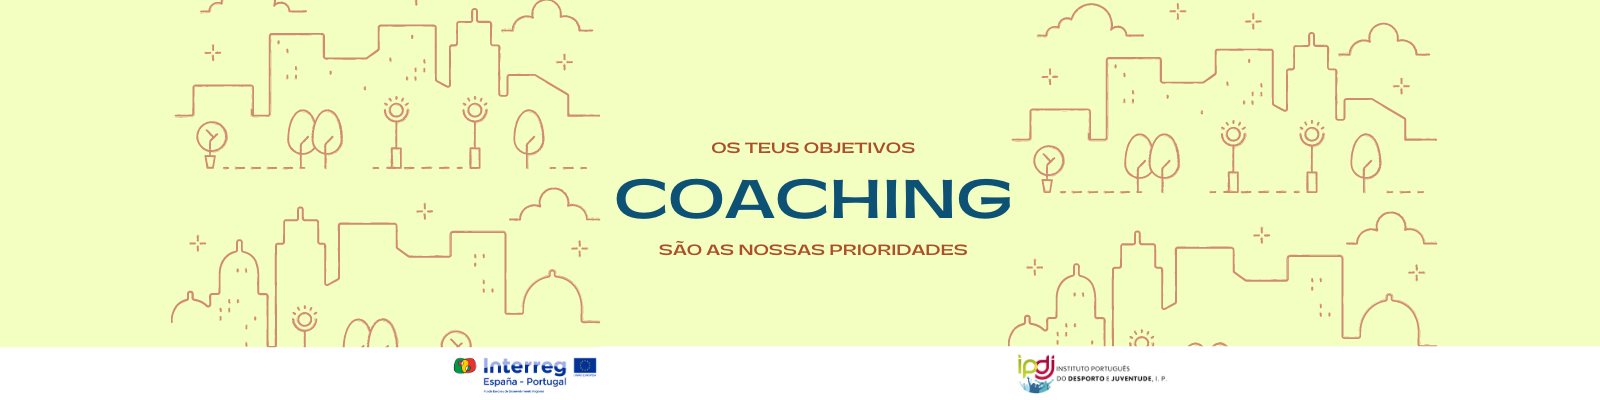 cartaz coaching